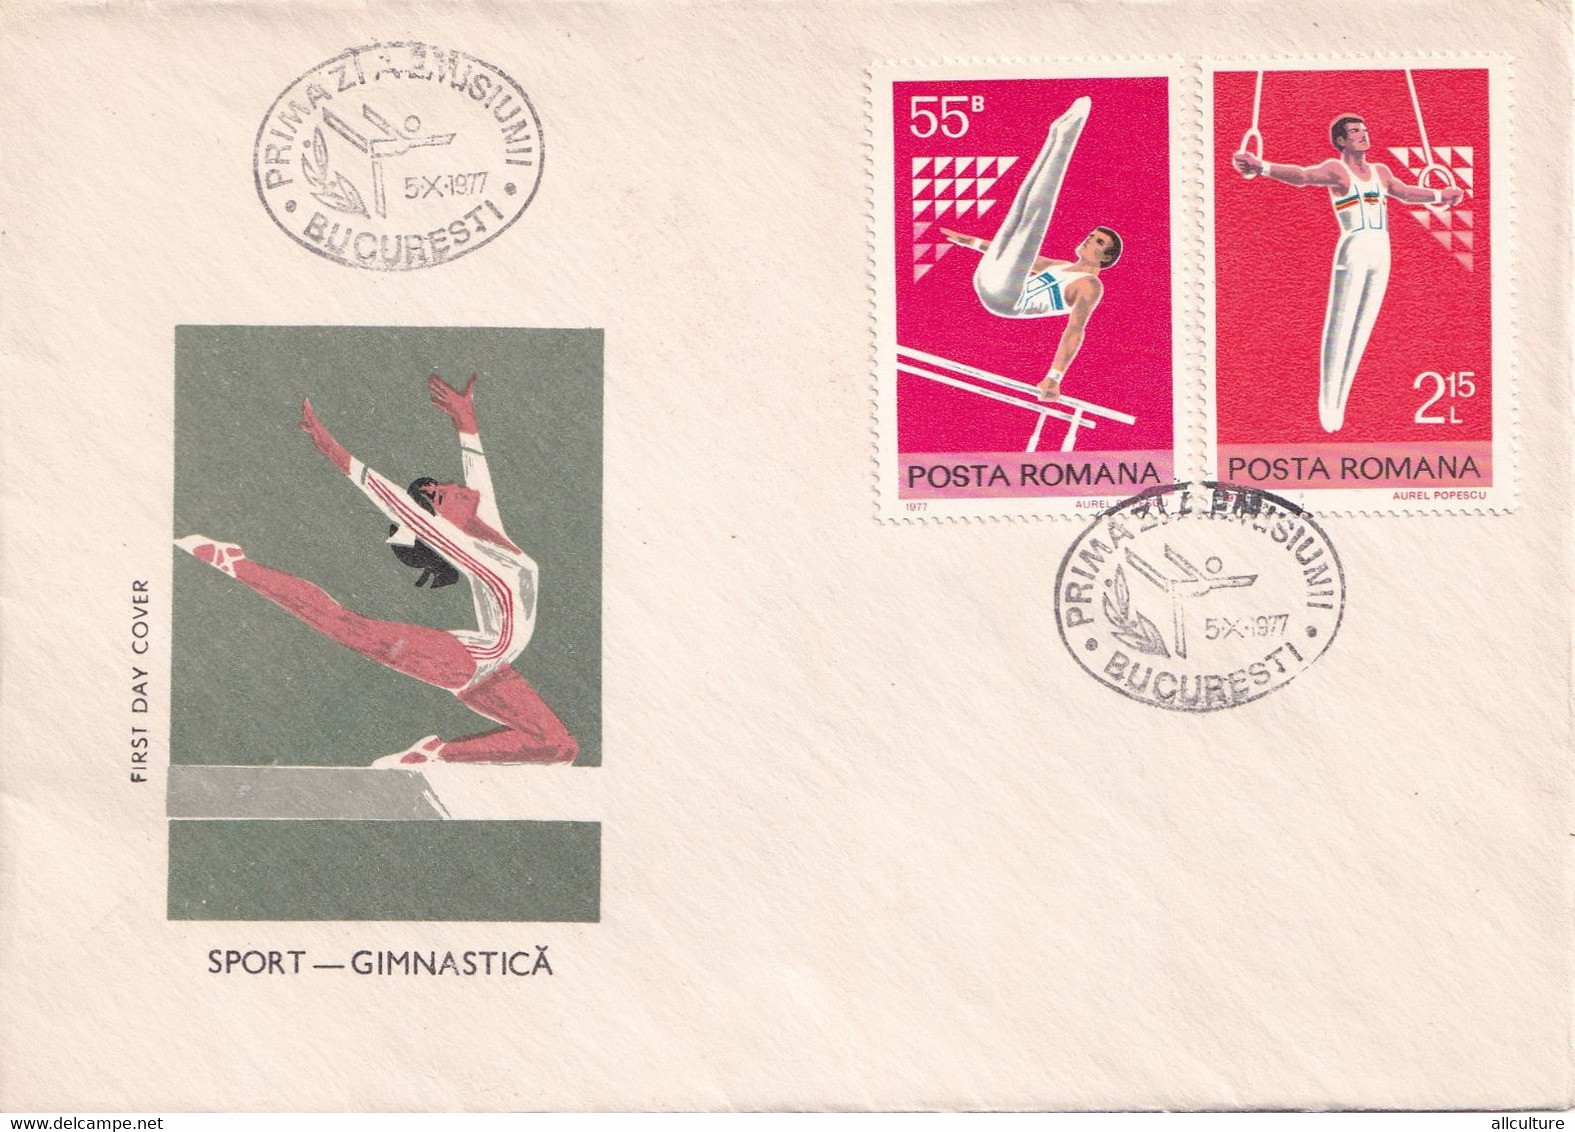 A2688- Sport - Gimnastica ,Romania, Bucuresti 1977 3 Covers FDC - Gymnastik